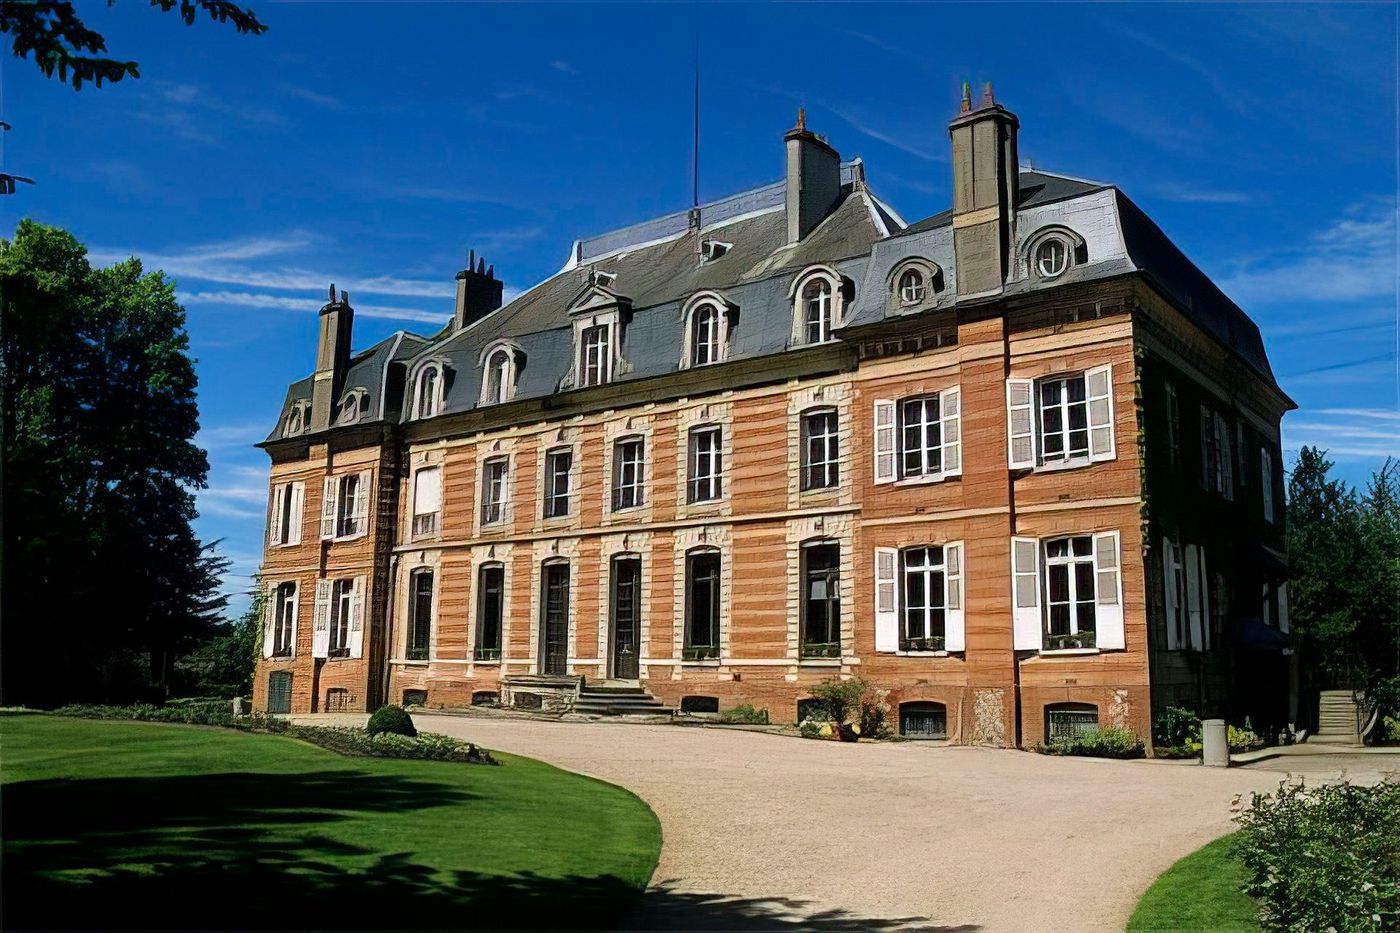 Château de Digeon, Morvillers-St-Saturnin